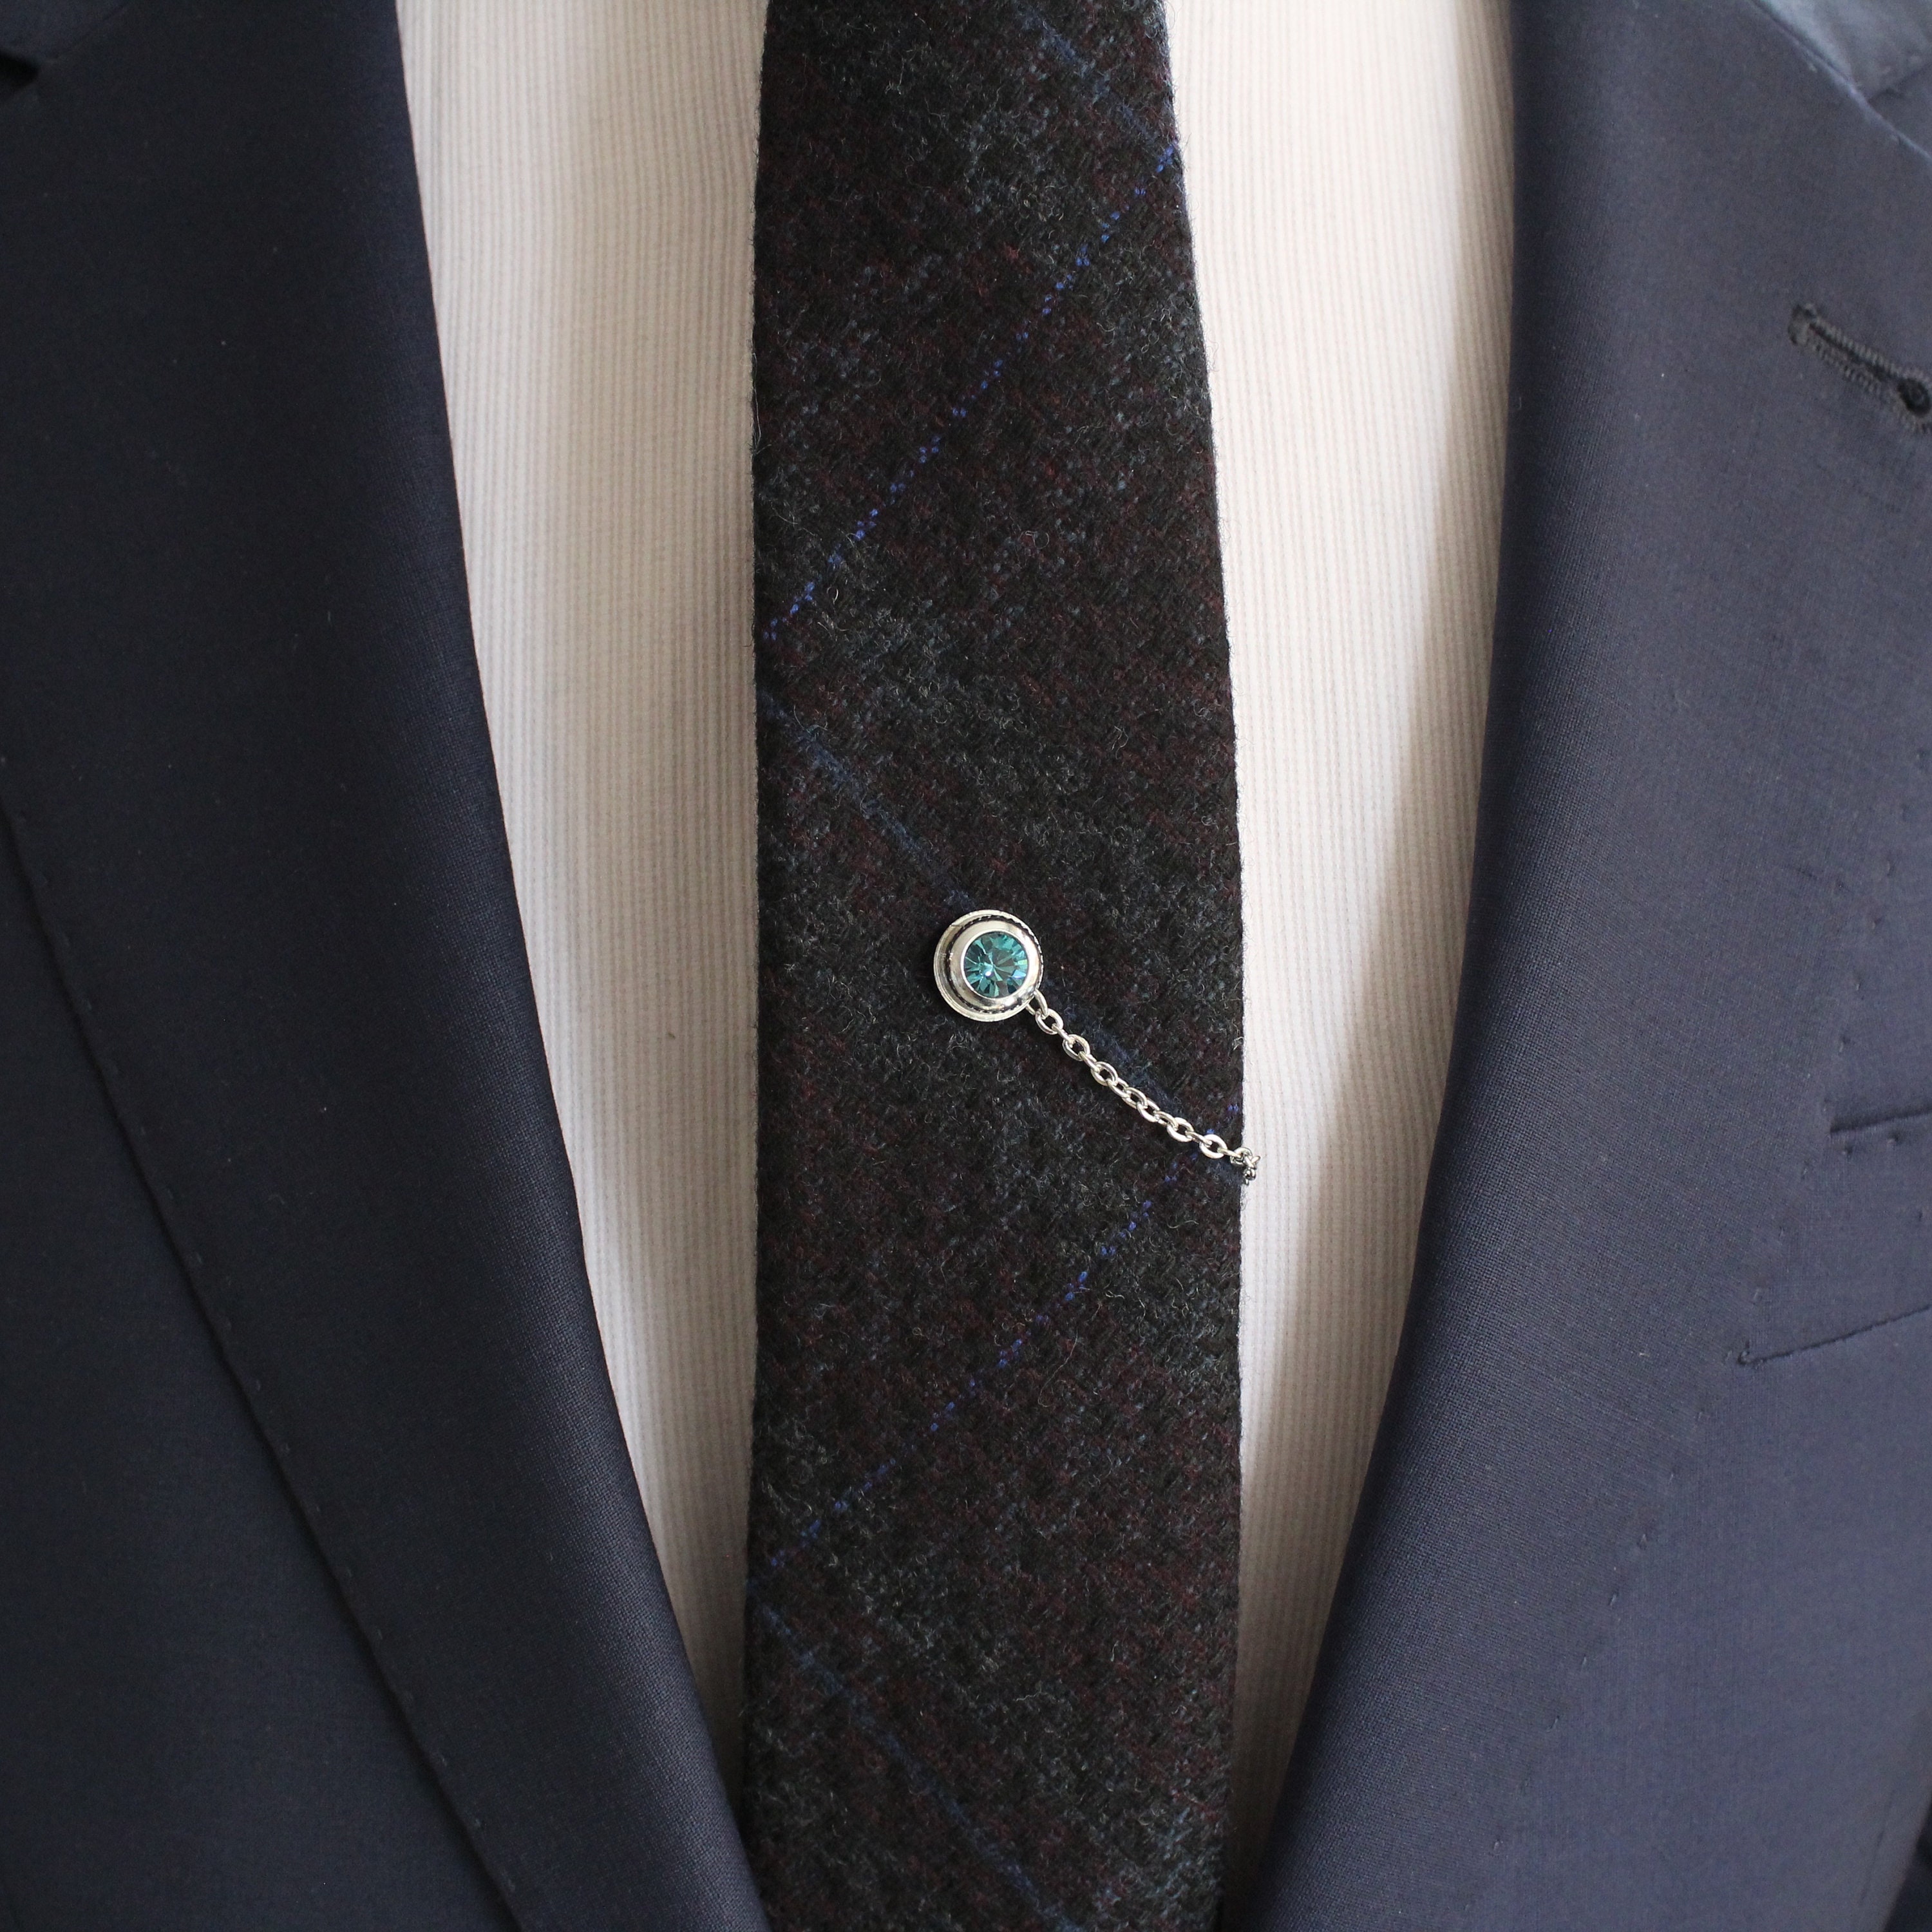 Tie Tack with chain Tie Clip Tie Bar Hand Made Unique Etsy 日本